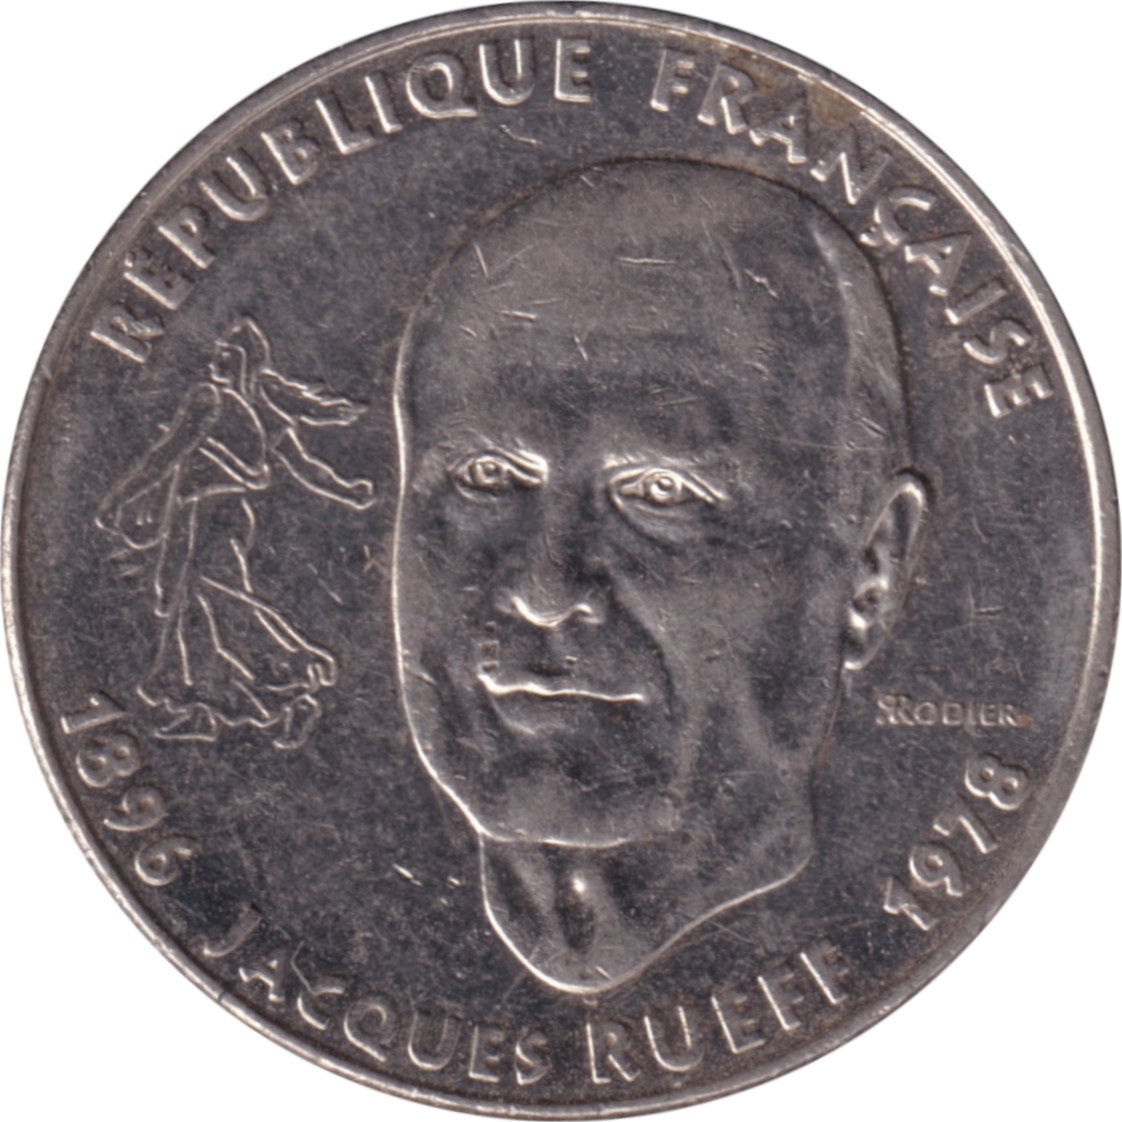 1 franc - Jacques Rueff